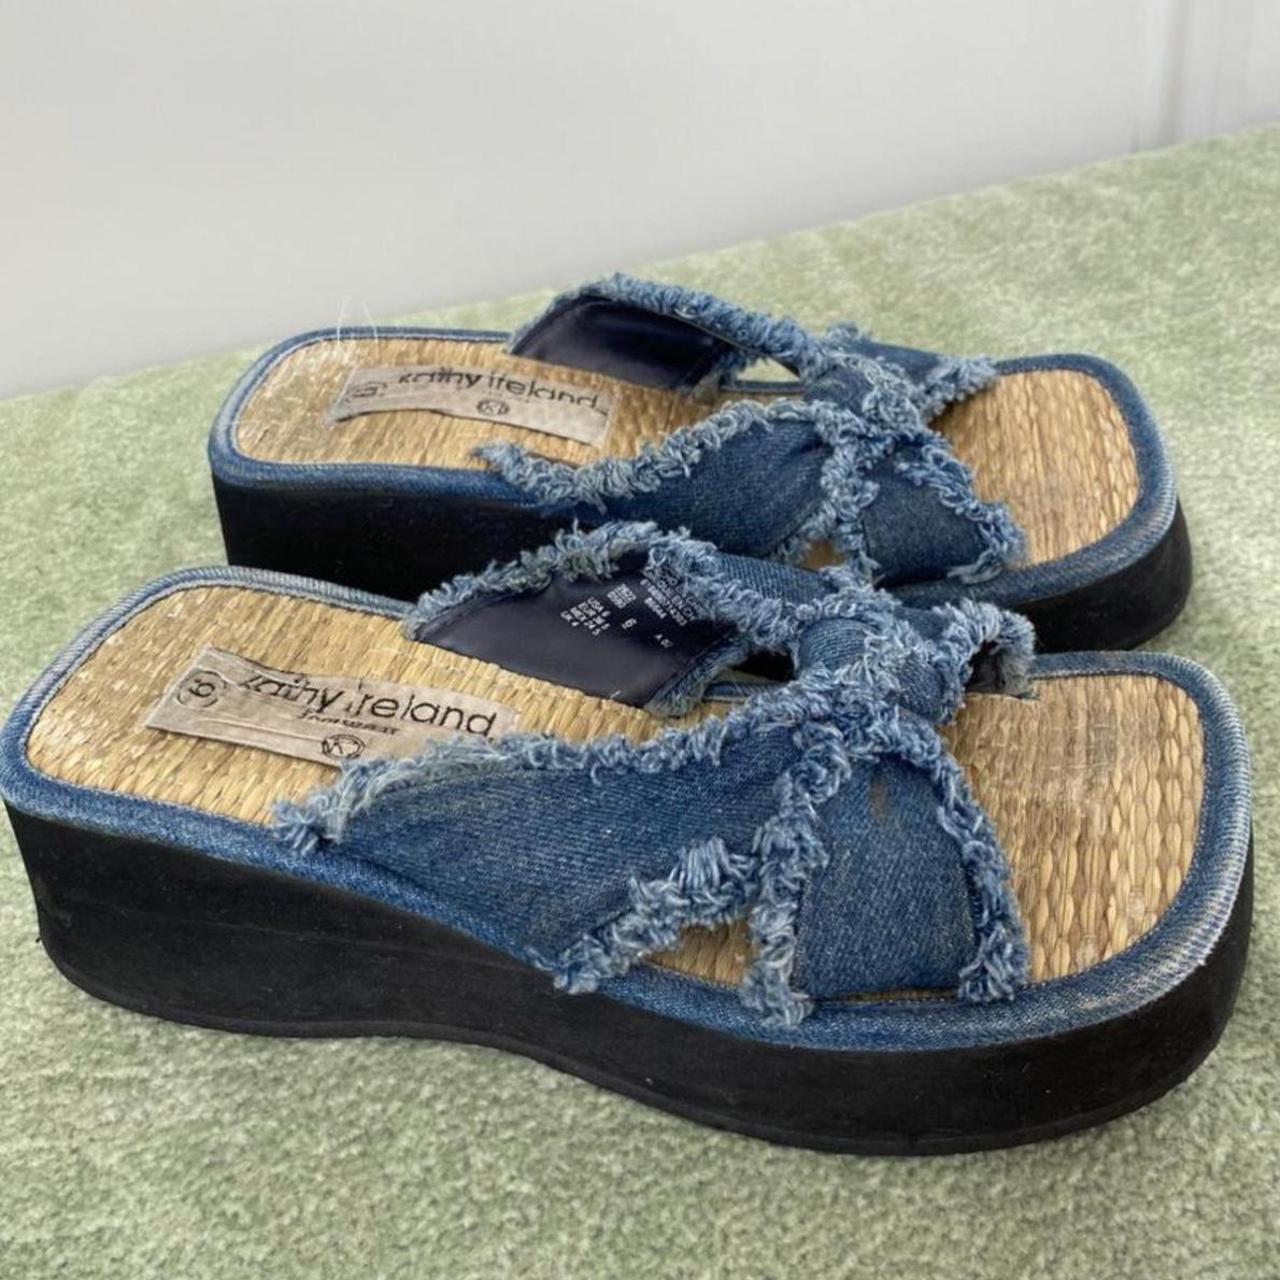 Vintage y2k chunky platform denim sandals! These... - Depop